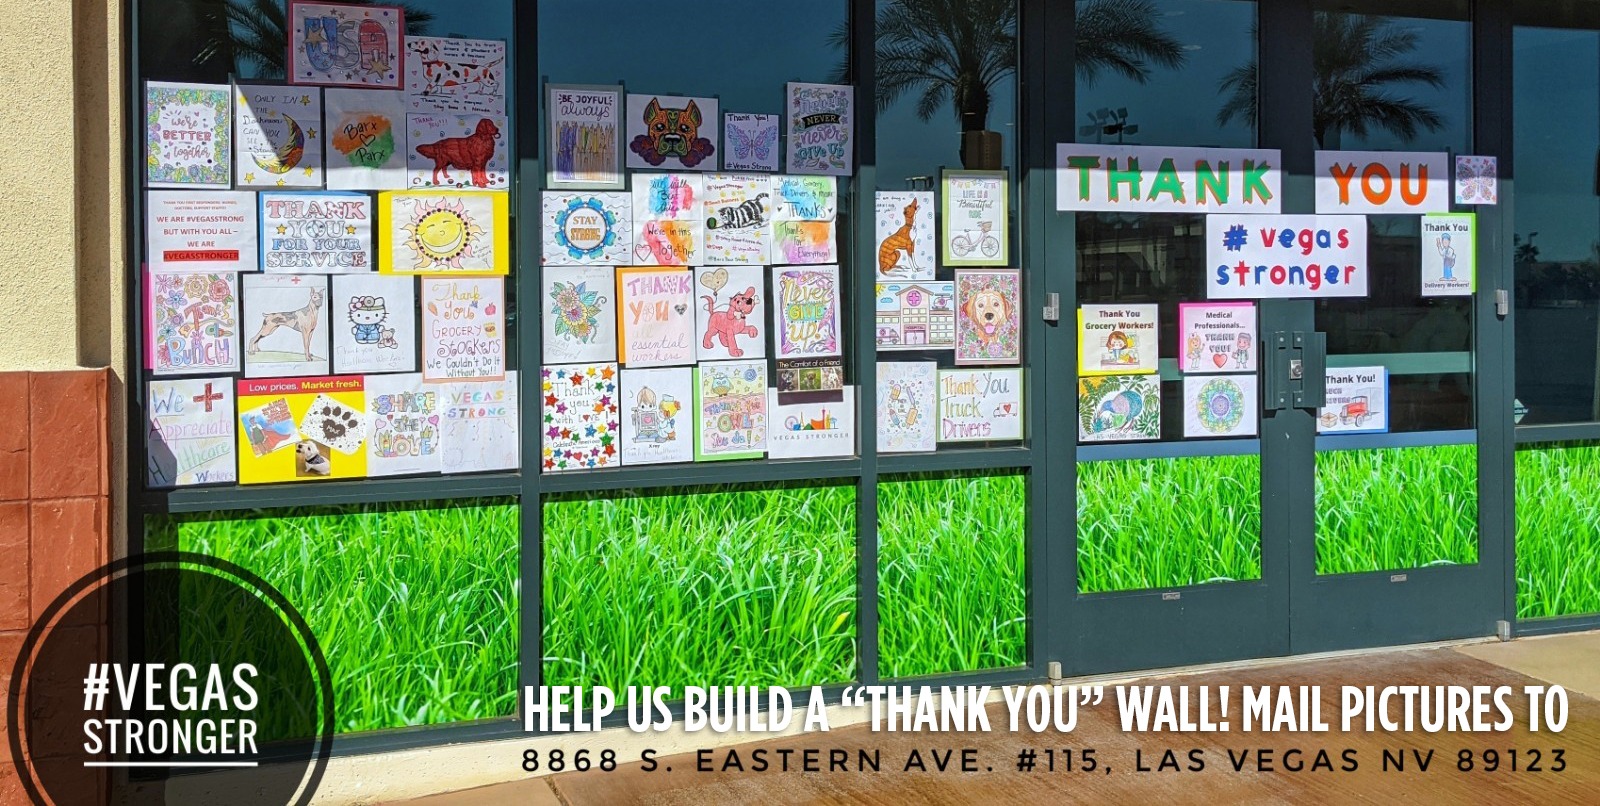 #vegasstronger “Thank You” Wall Of Love